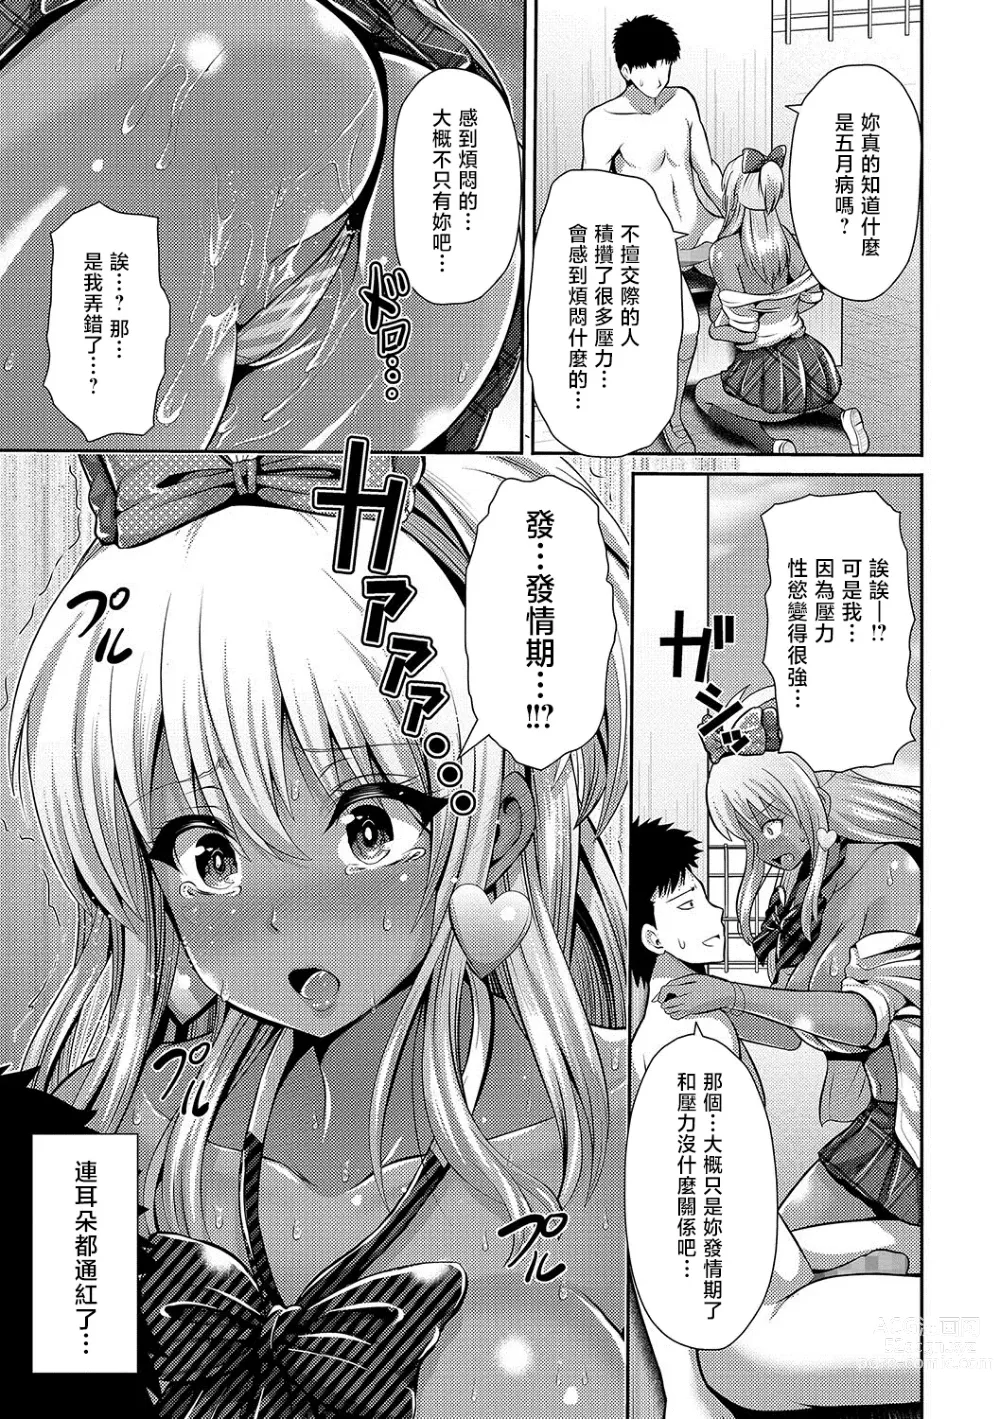 Page 9 of manga Gogatsubyou? Kuro Gal JK Hatsujou Chiryou